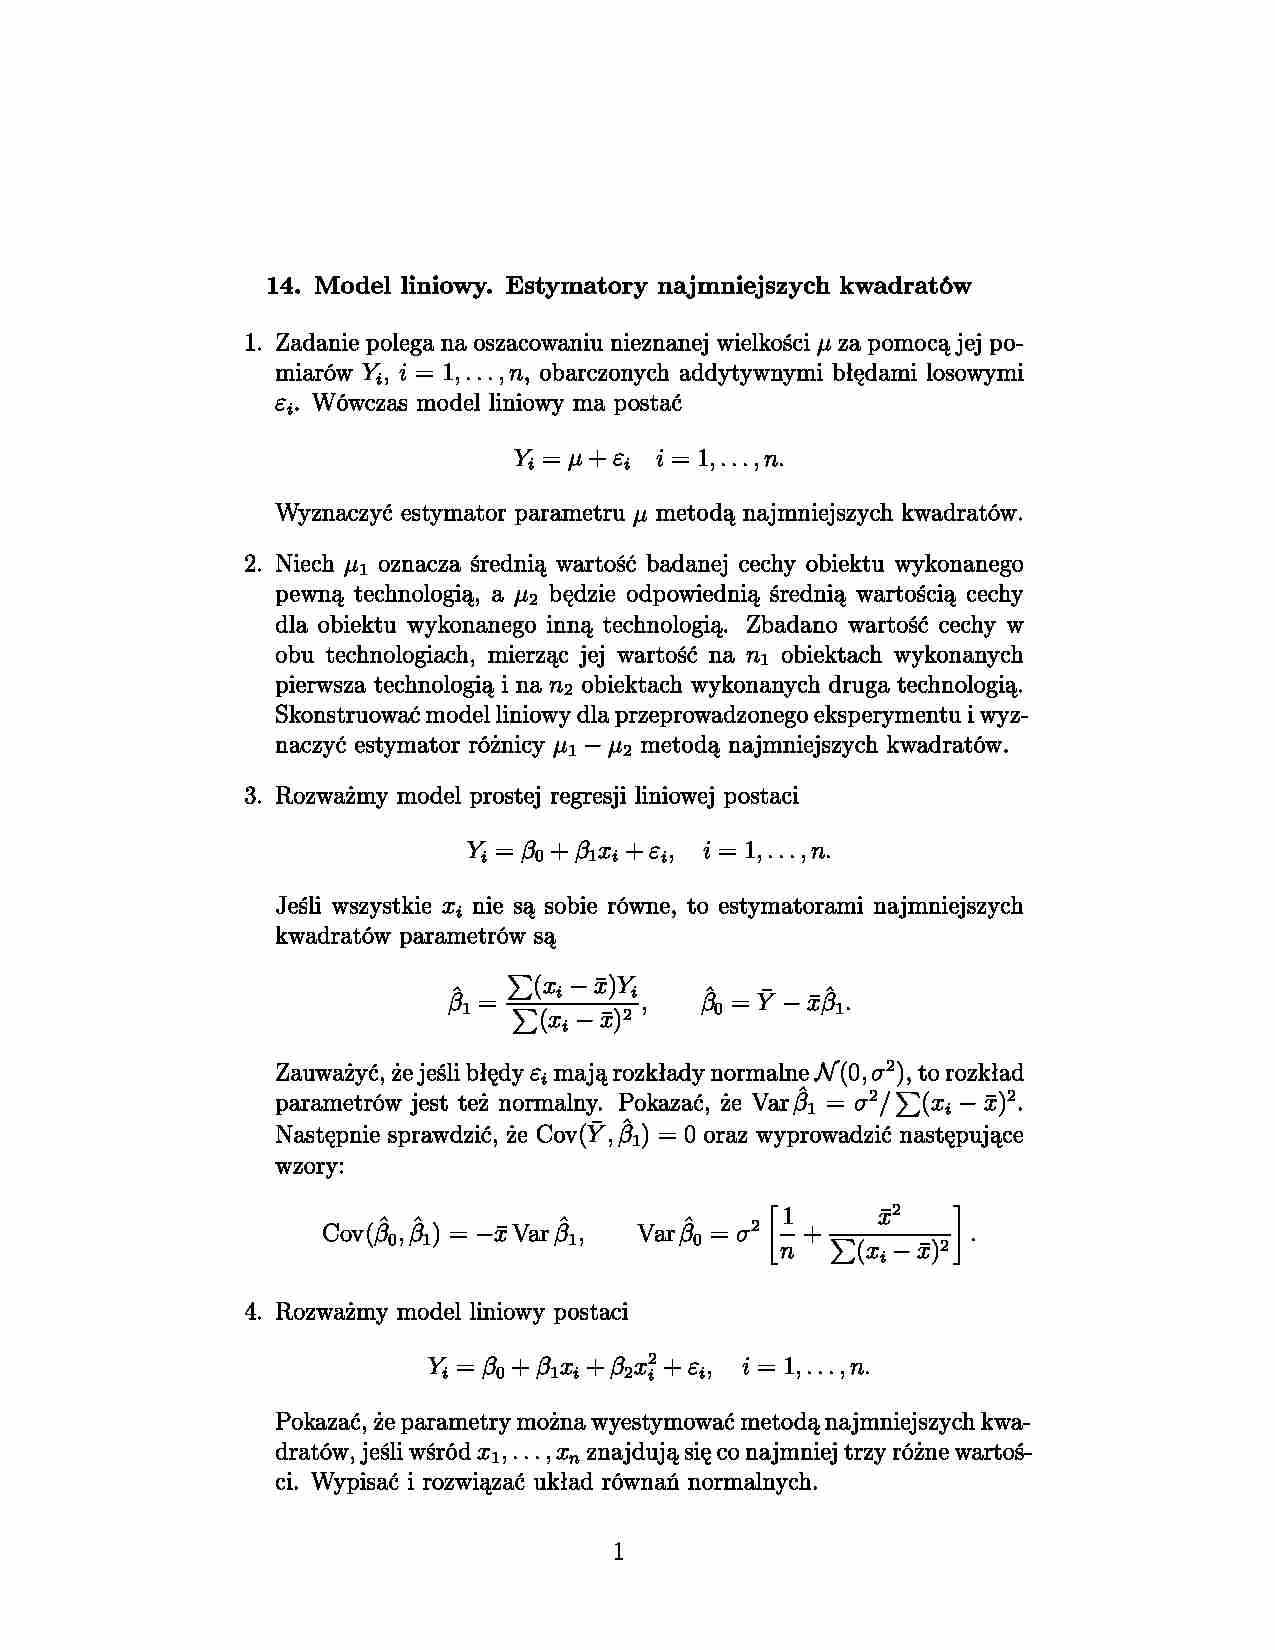 Model liniowy - strona 1